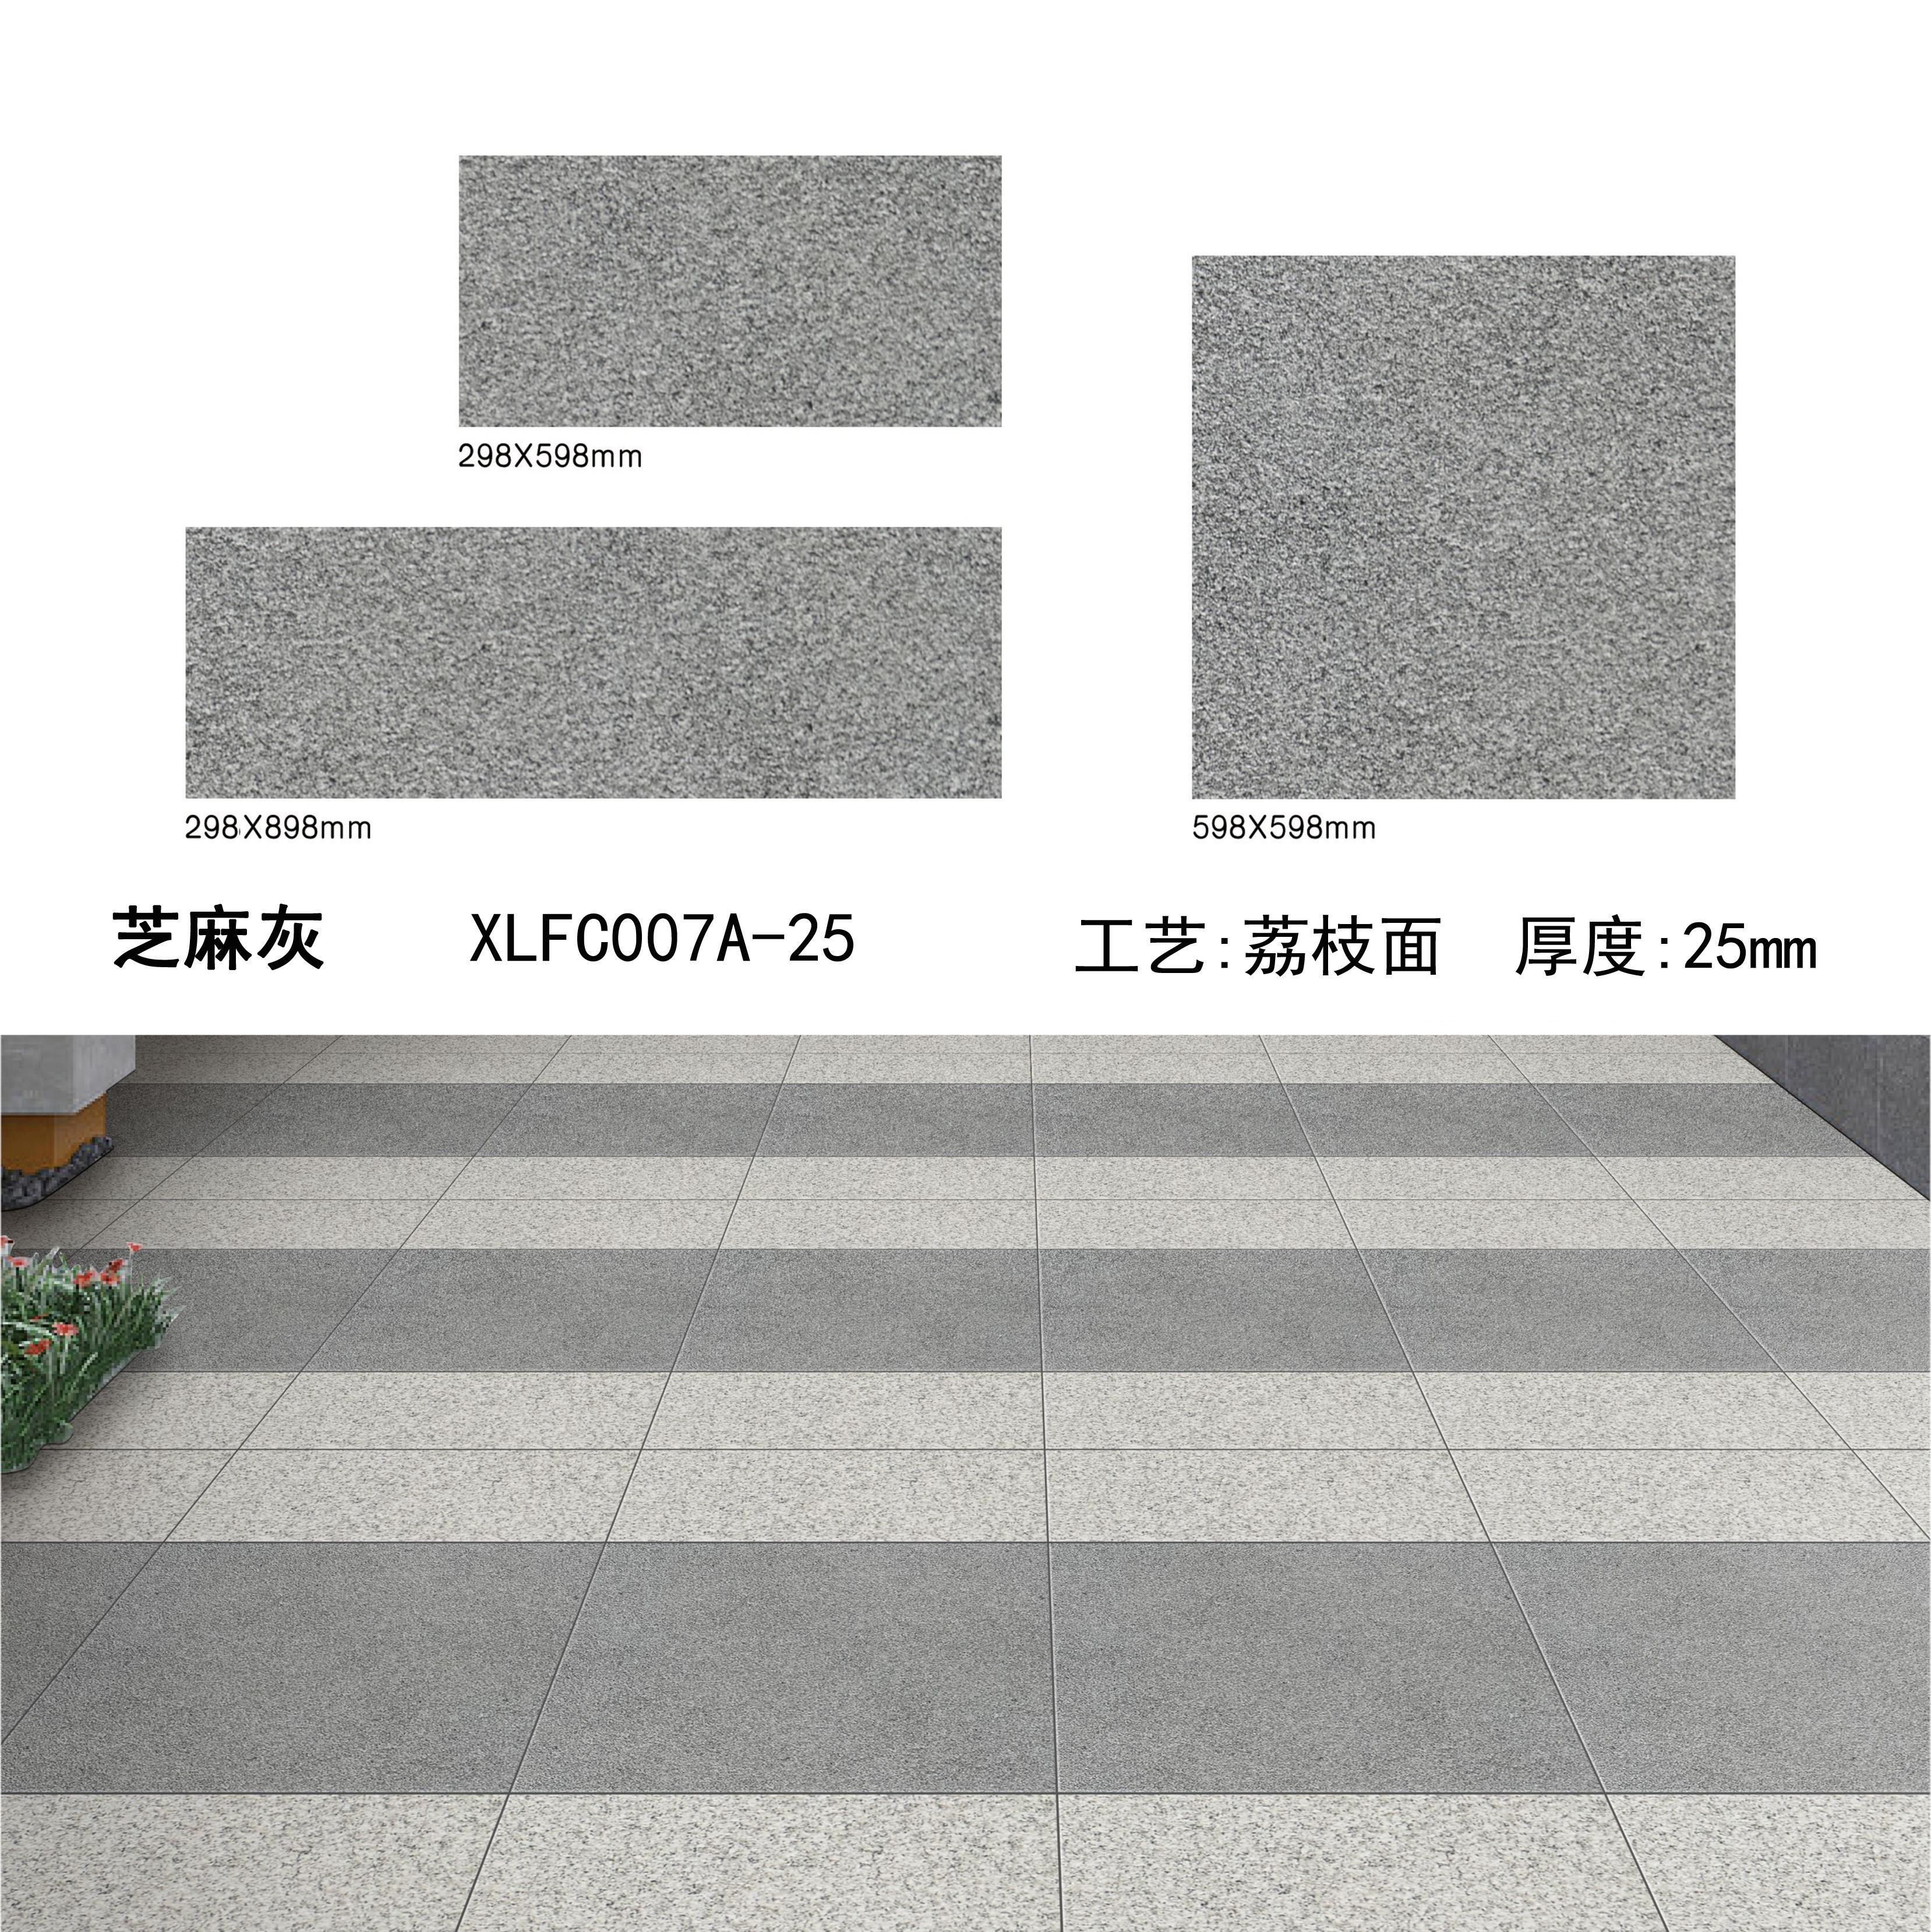 芝麻灰PC砖（07A-25）-南安市欣龙建材发展有限公司